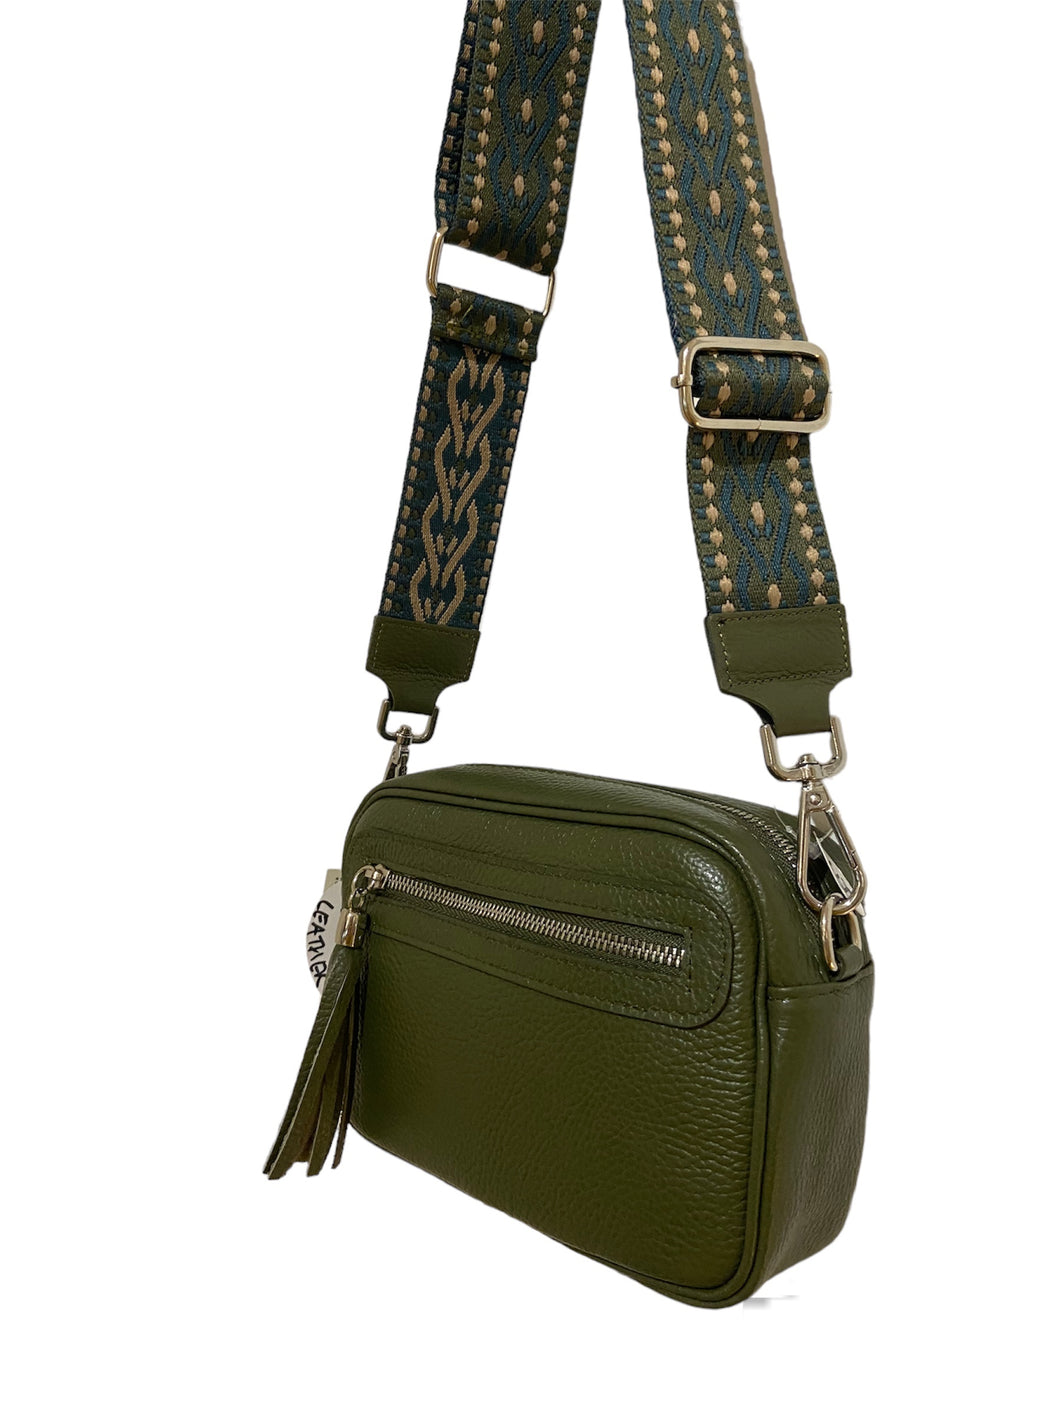 Detachable patterned bag strap for camera bag